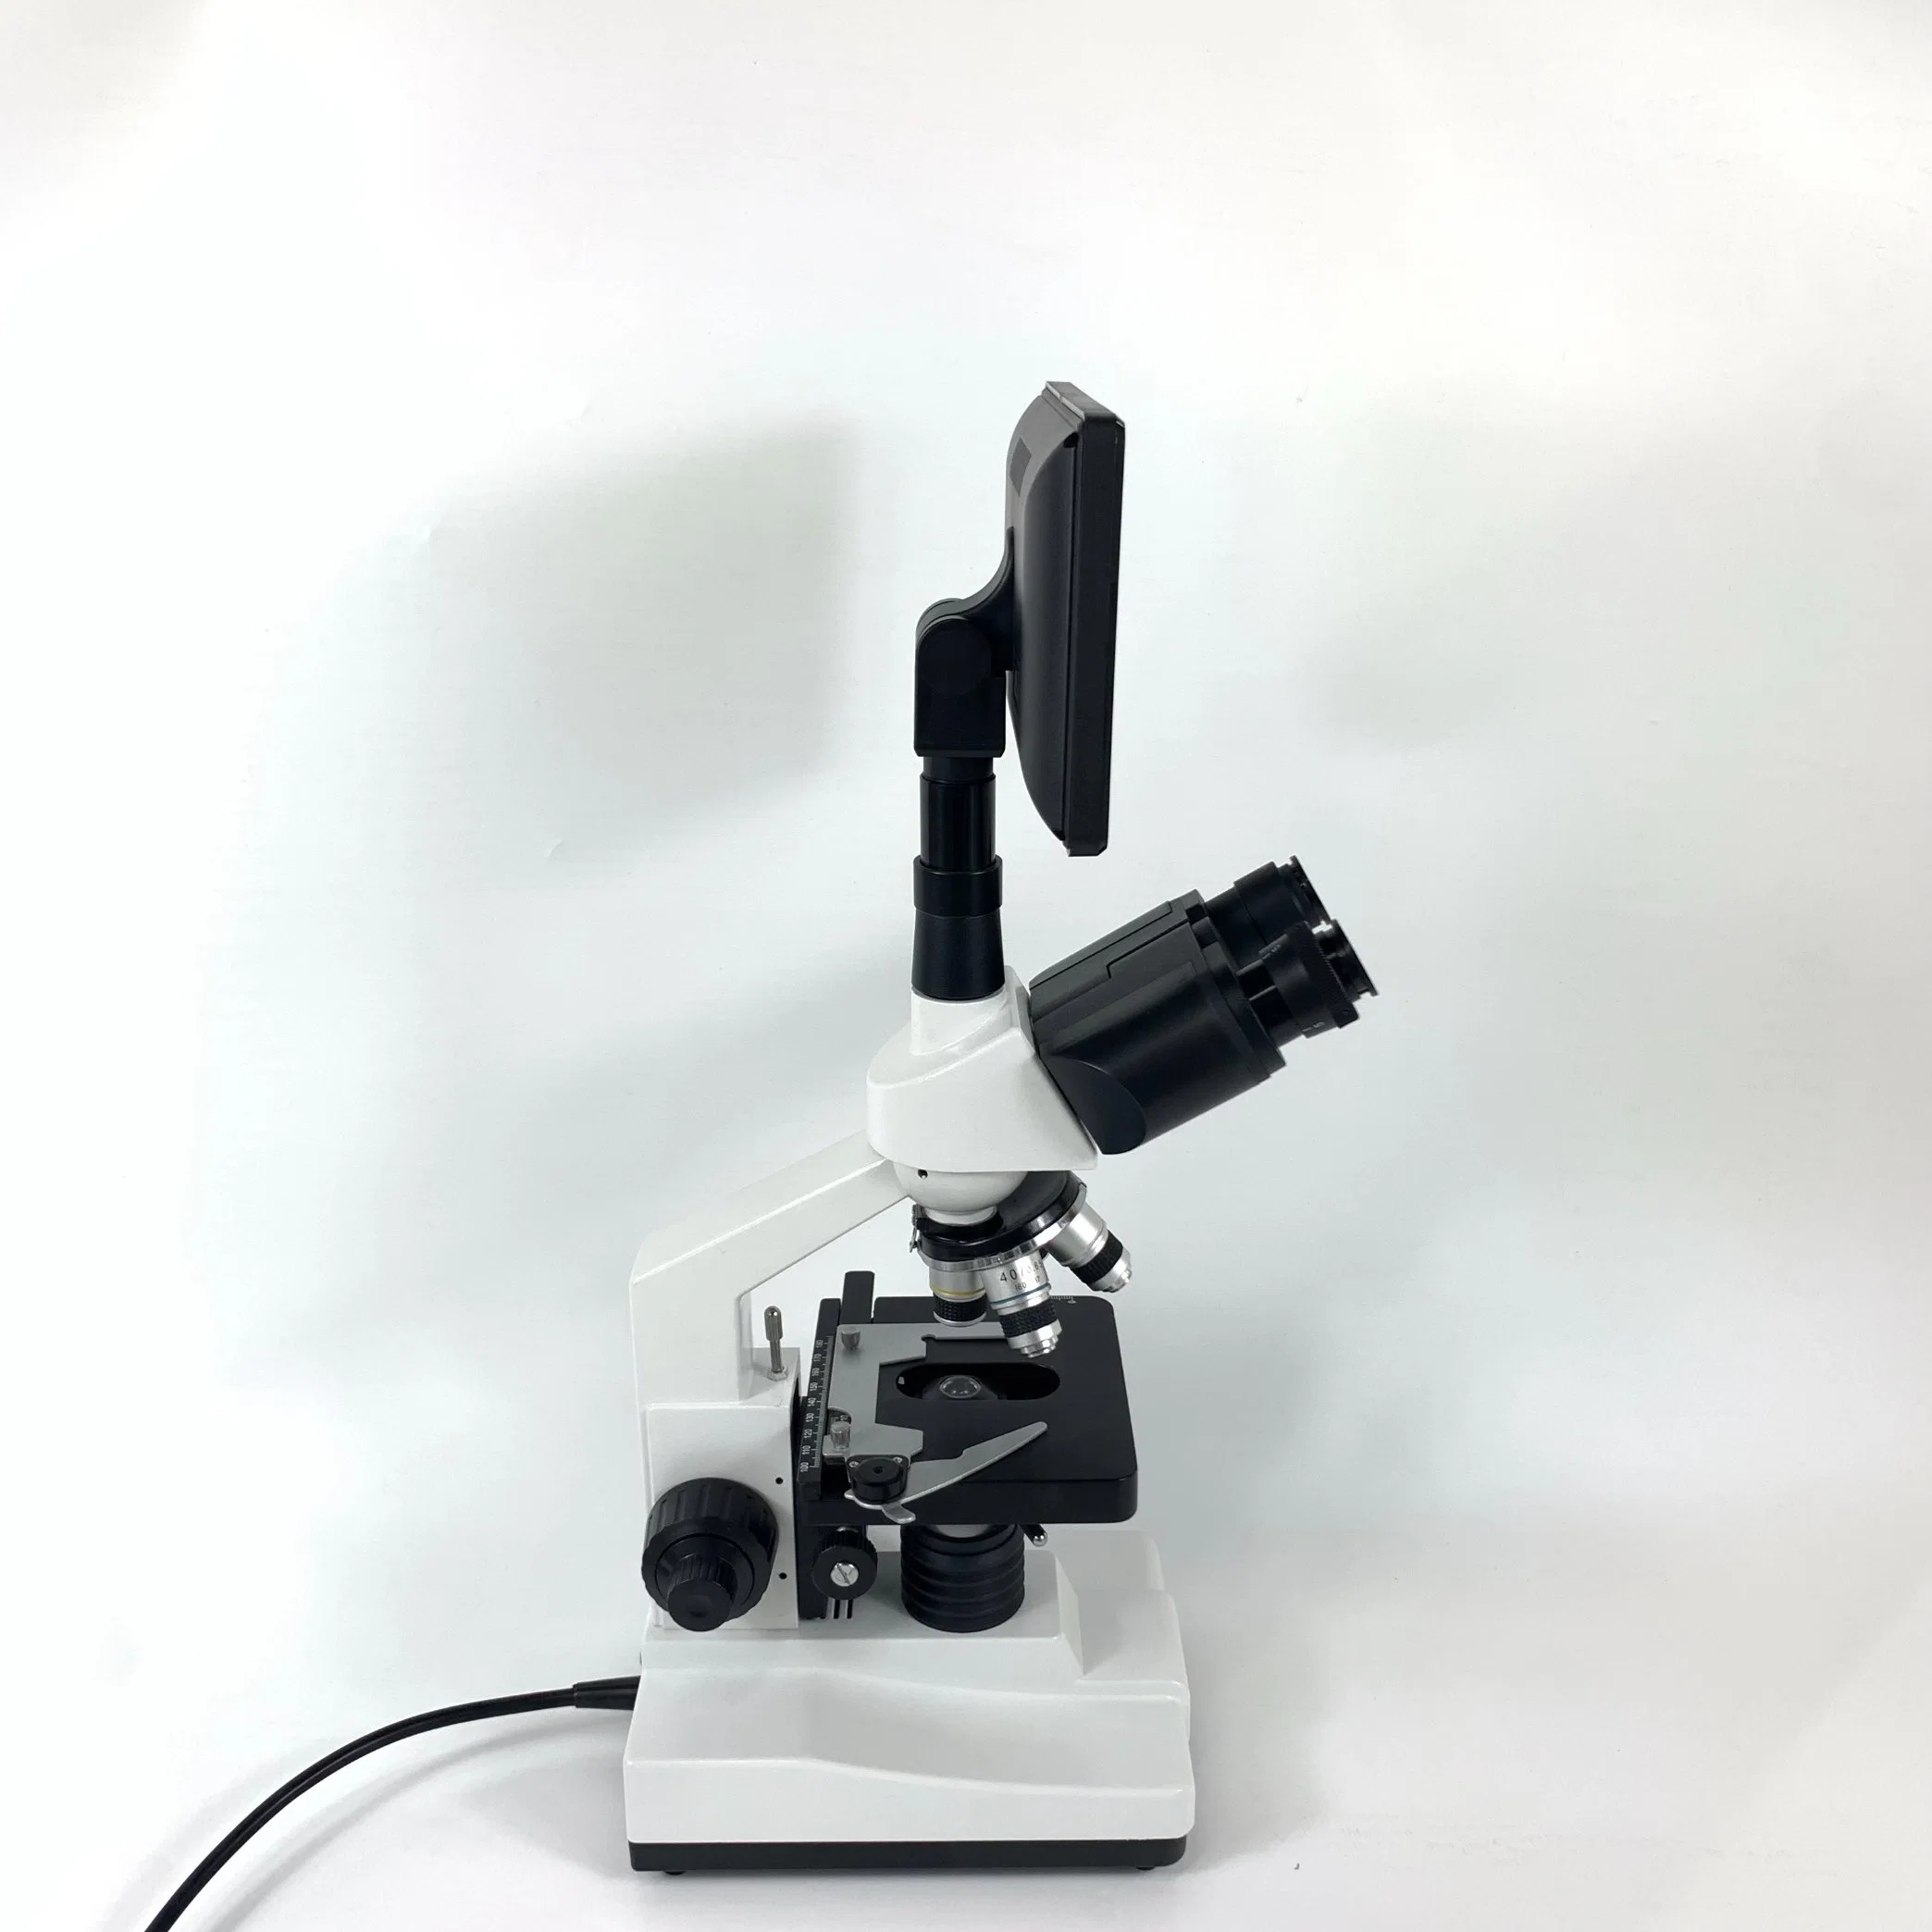 7inch Digital Screen Professionelles Trinokulares Biologisches Mikroskop